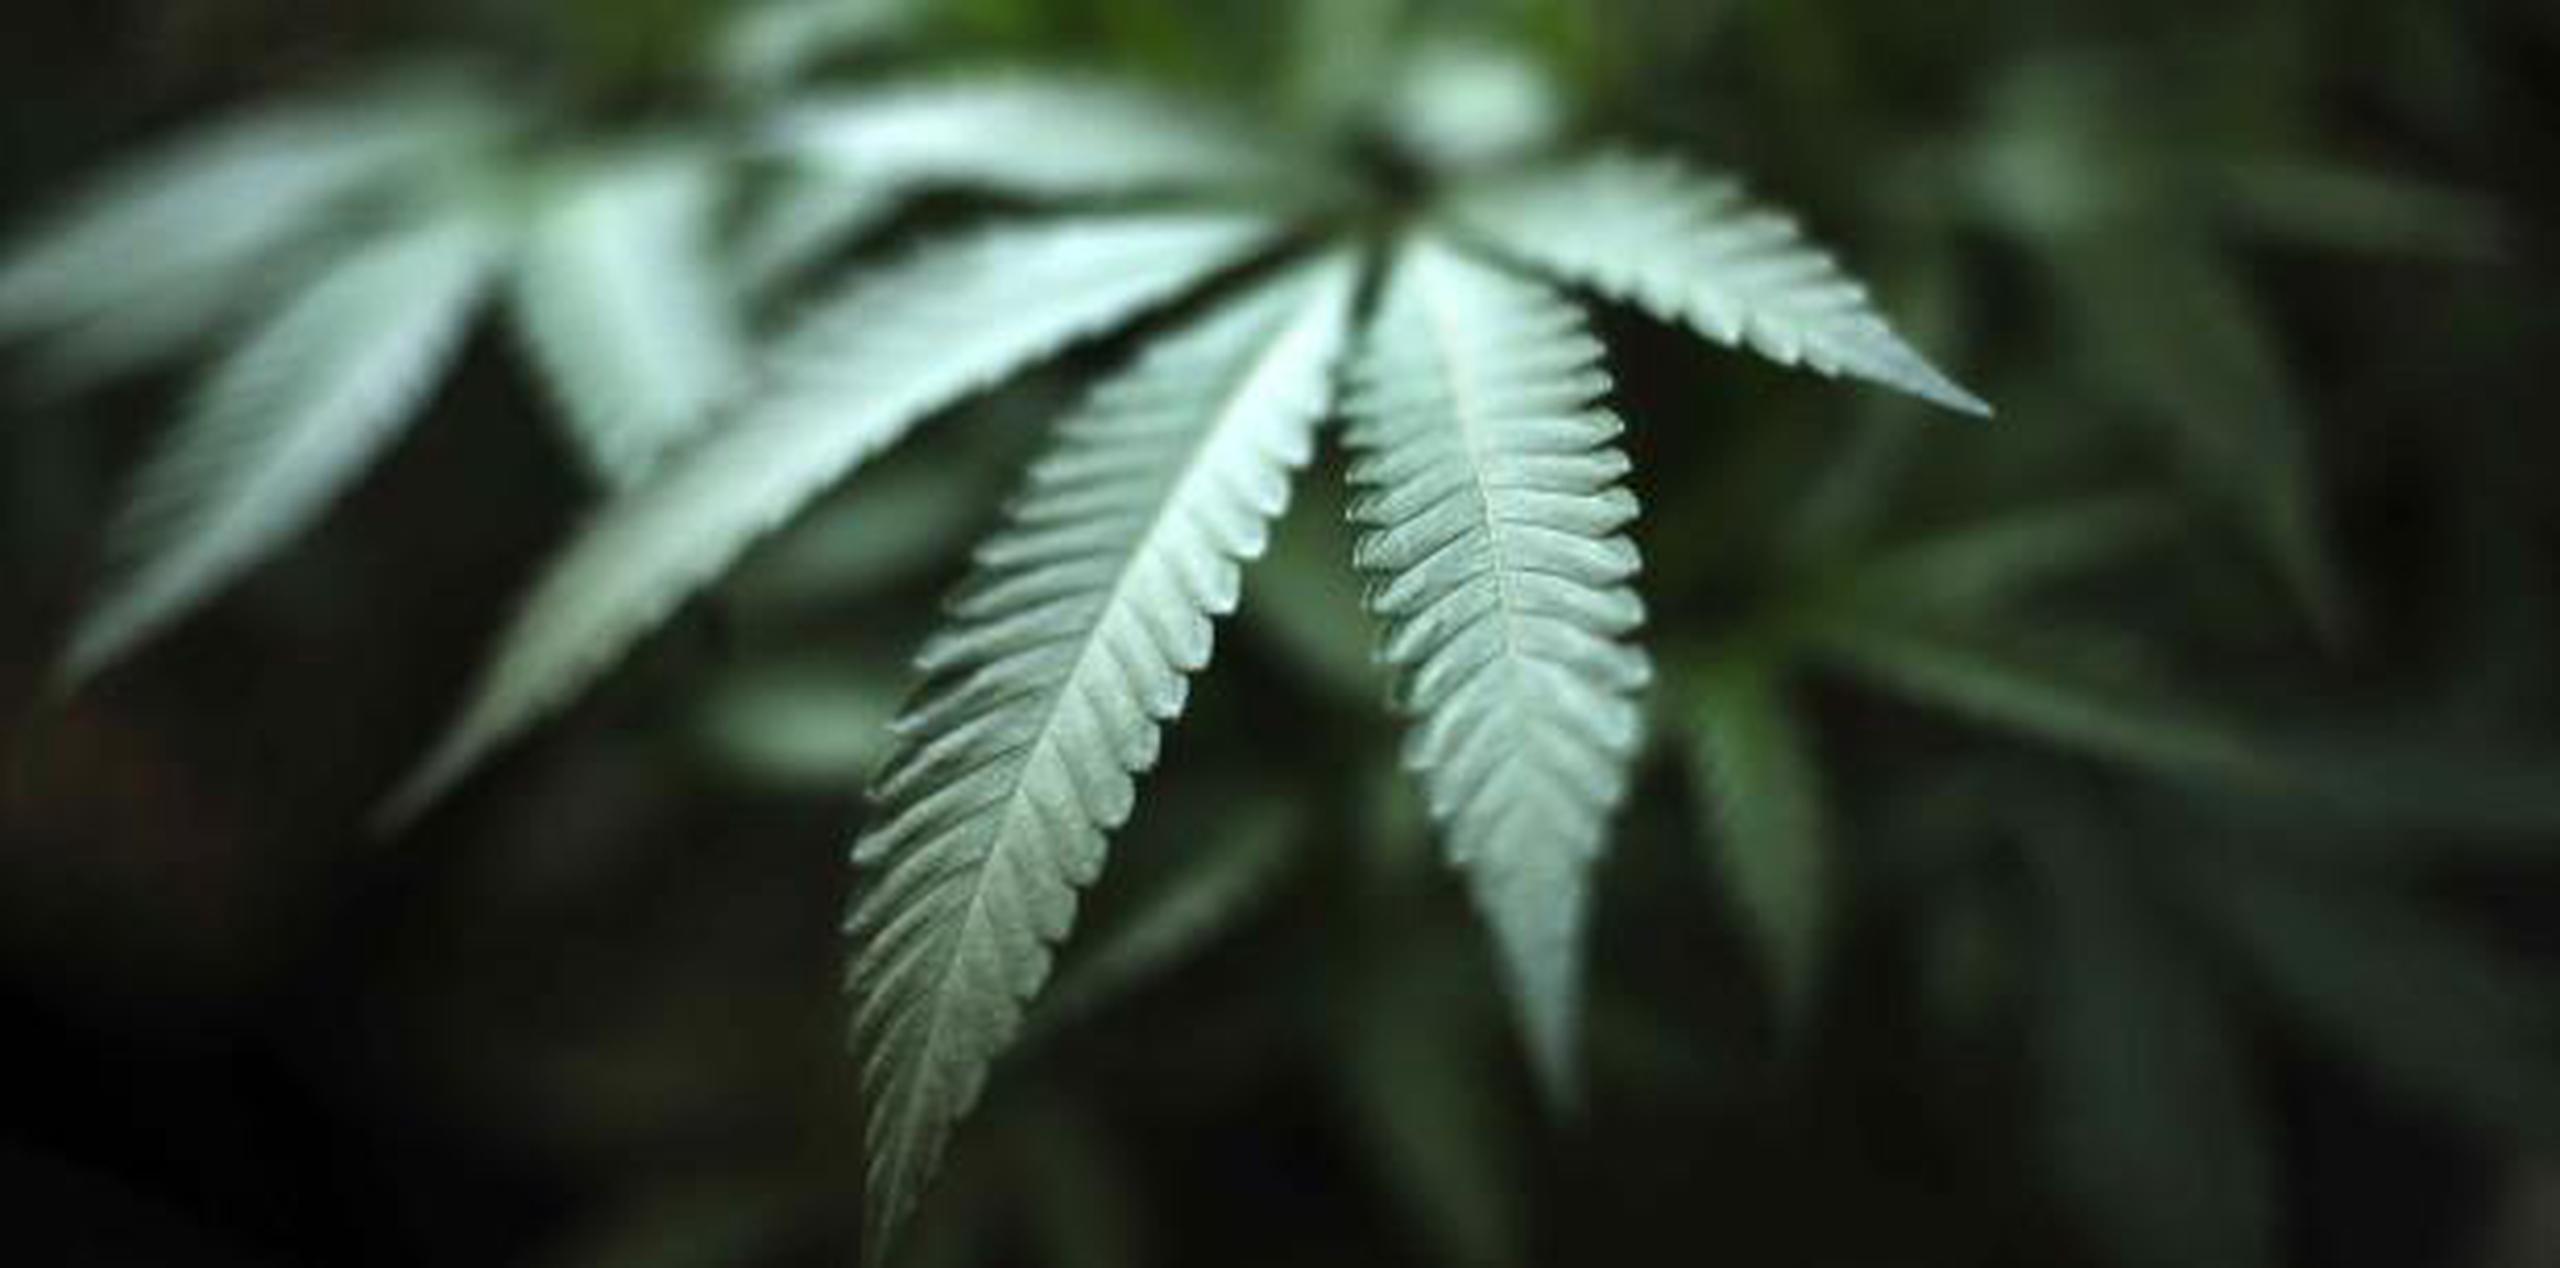 Unos tres millones de dólares serán invertidos para la pesquisa sobre la marihuana. (AP / Richard Vogel)